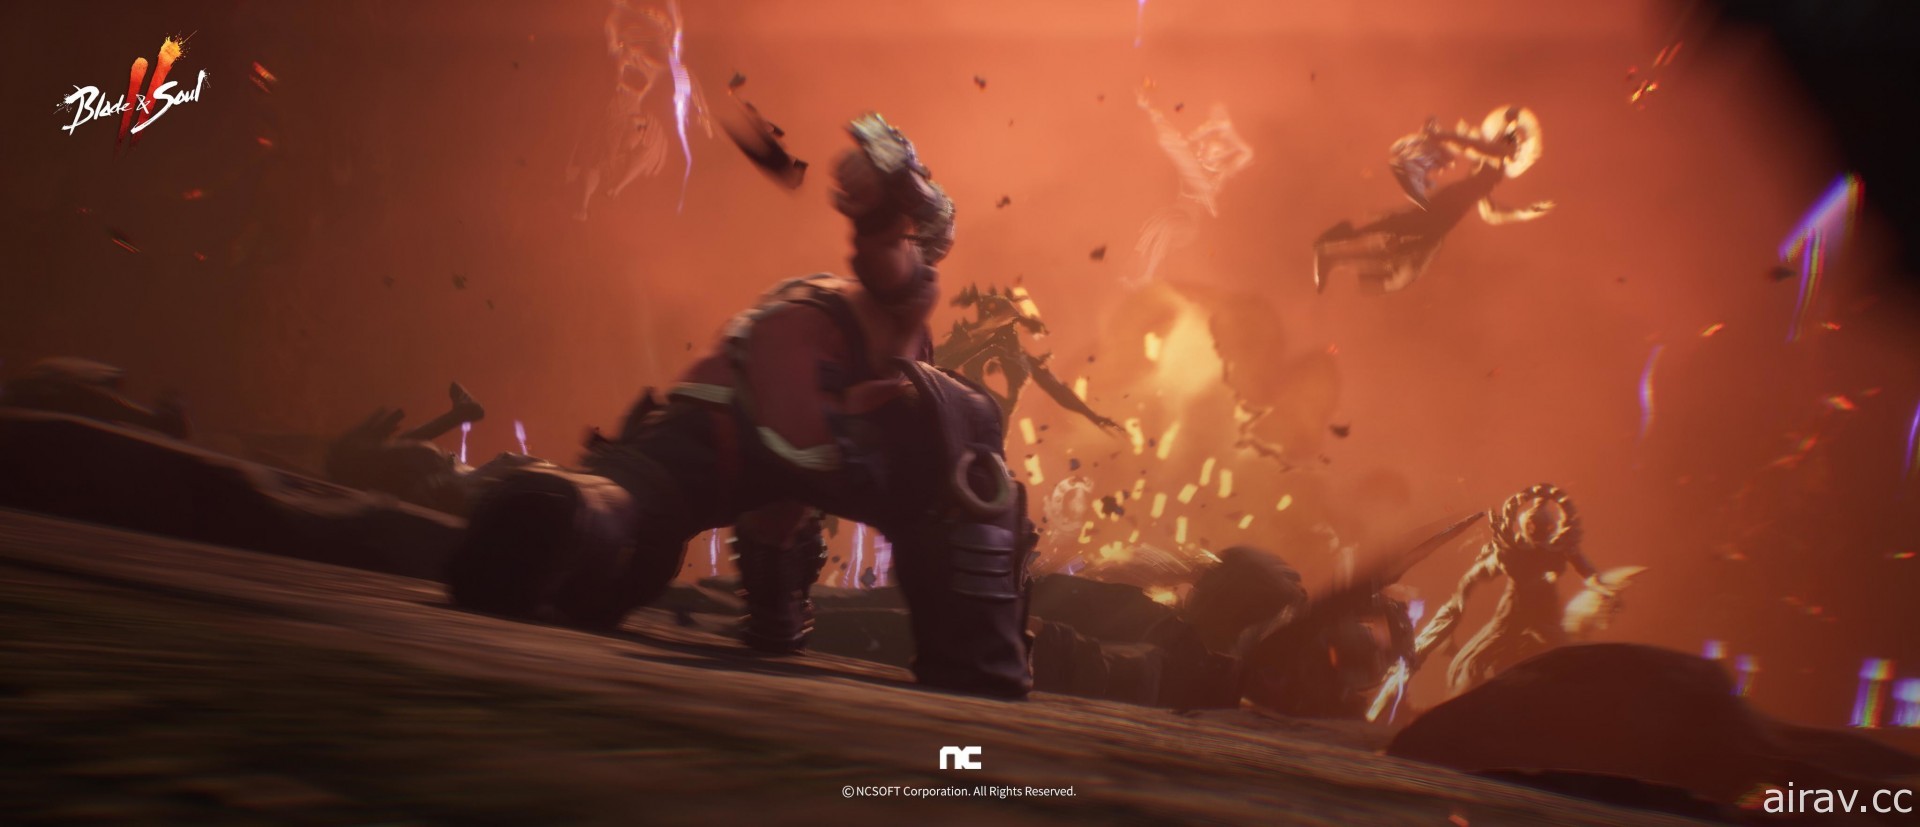 《剑灵 2》公开最新宣传影片 揭露剑、斧、拳甲等战斗画面及新职业